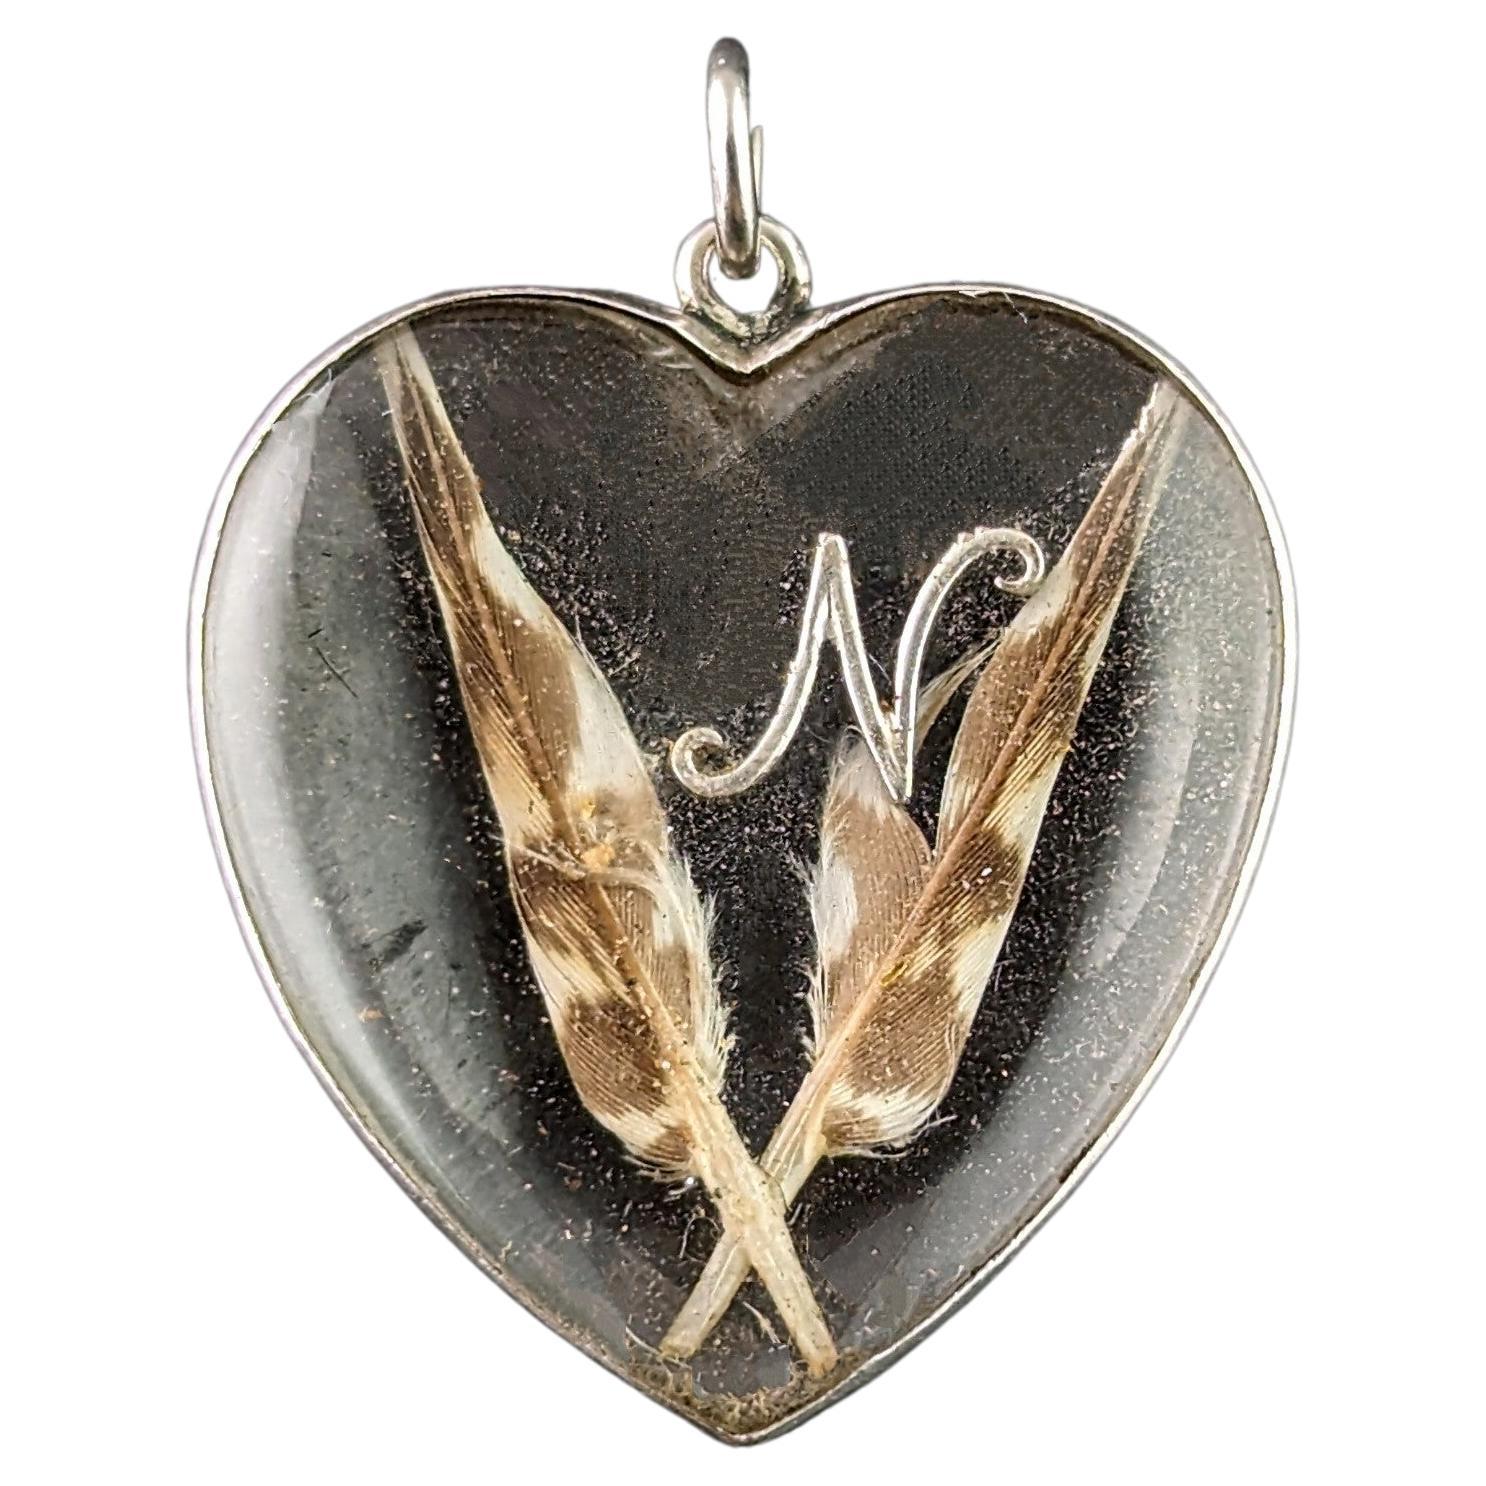 Antique Platinum heart locket, initial N, pendant 